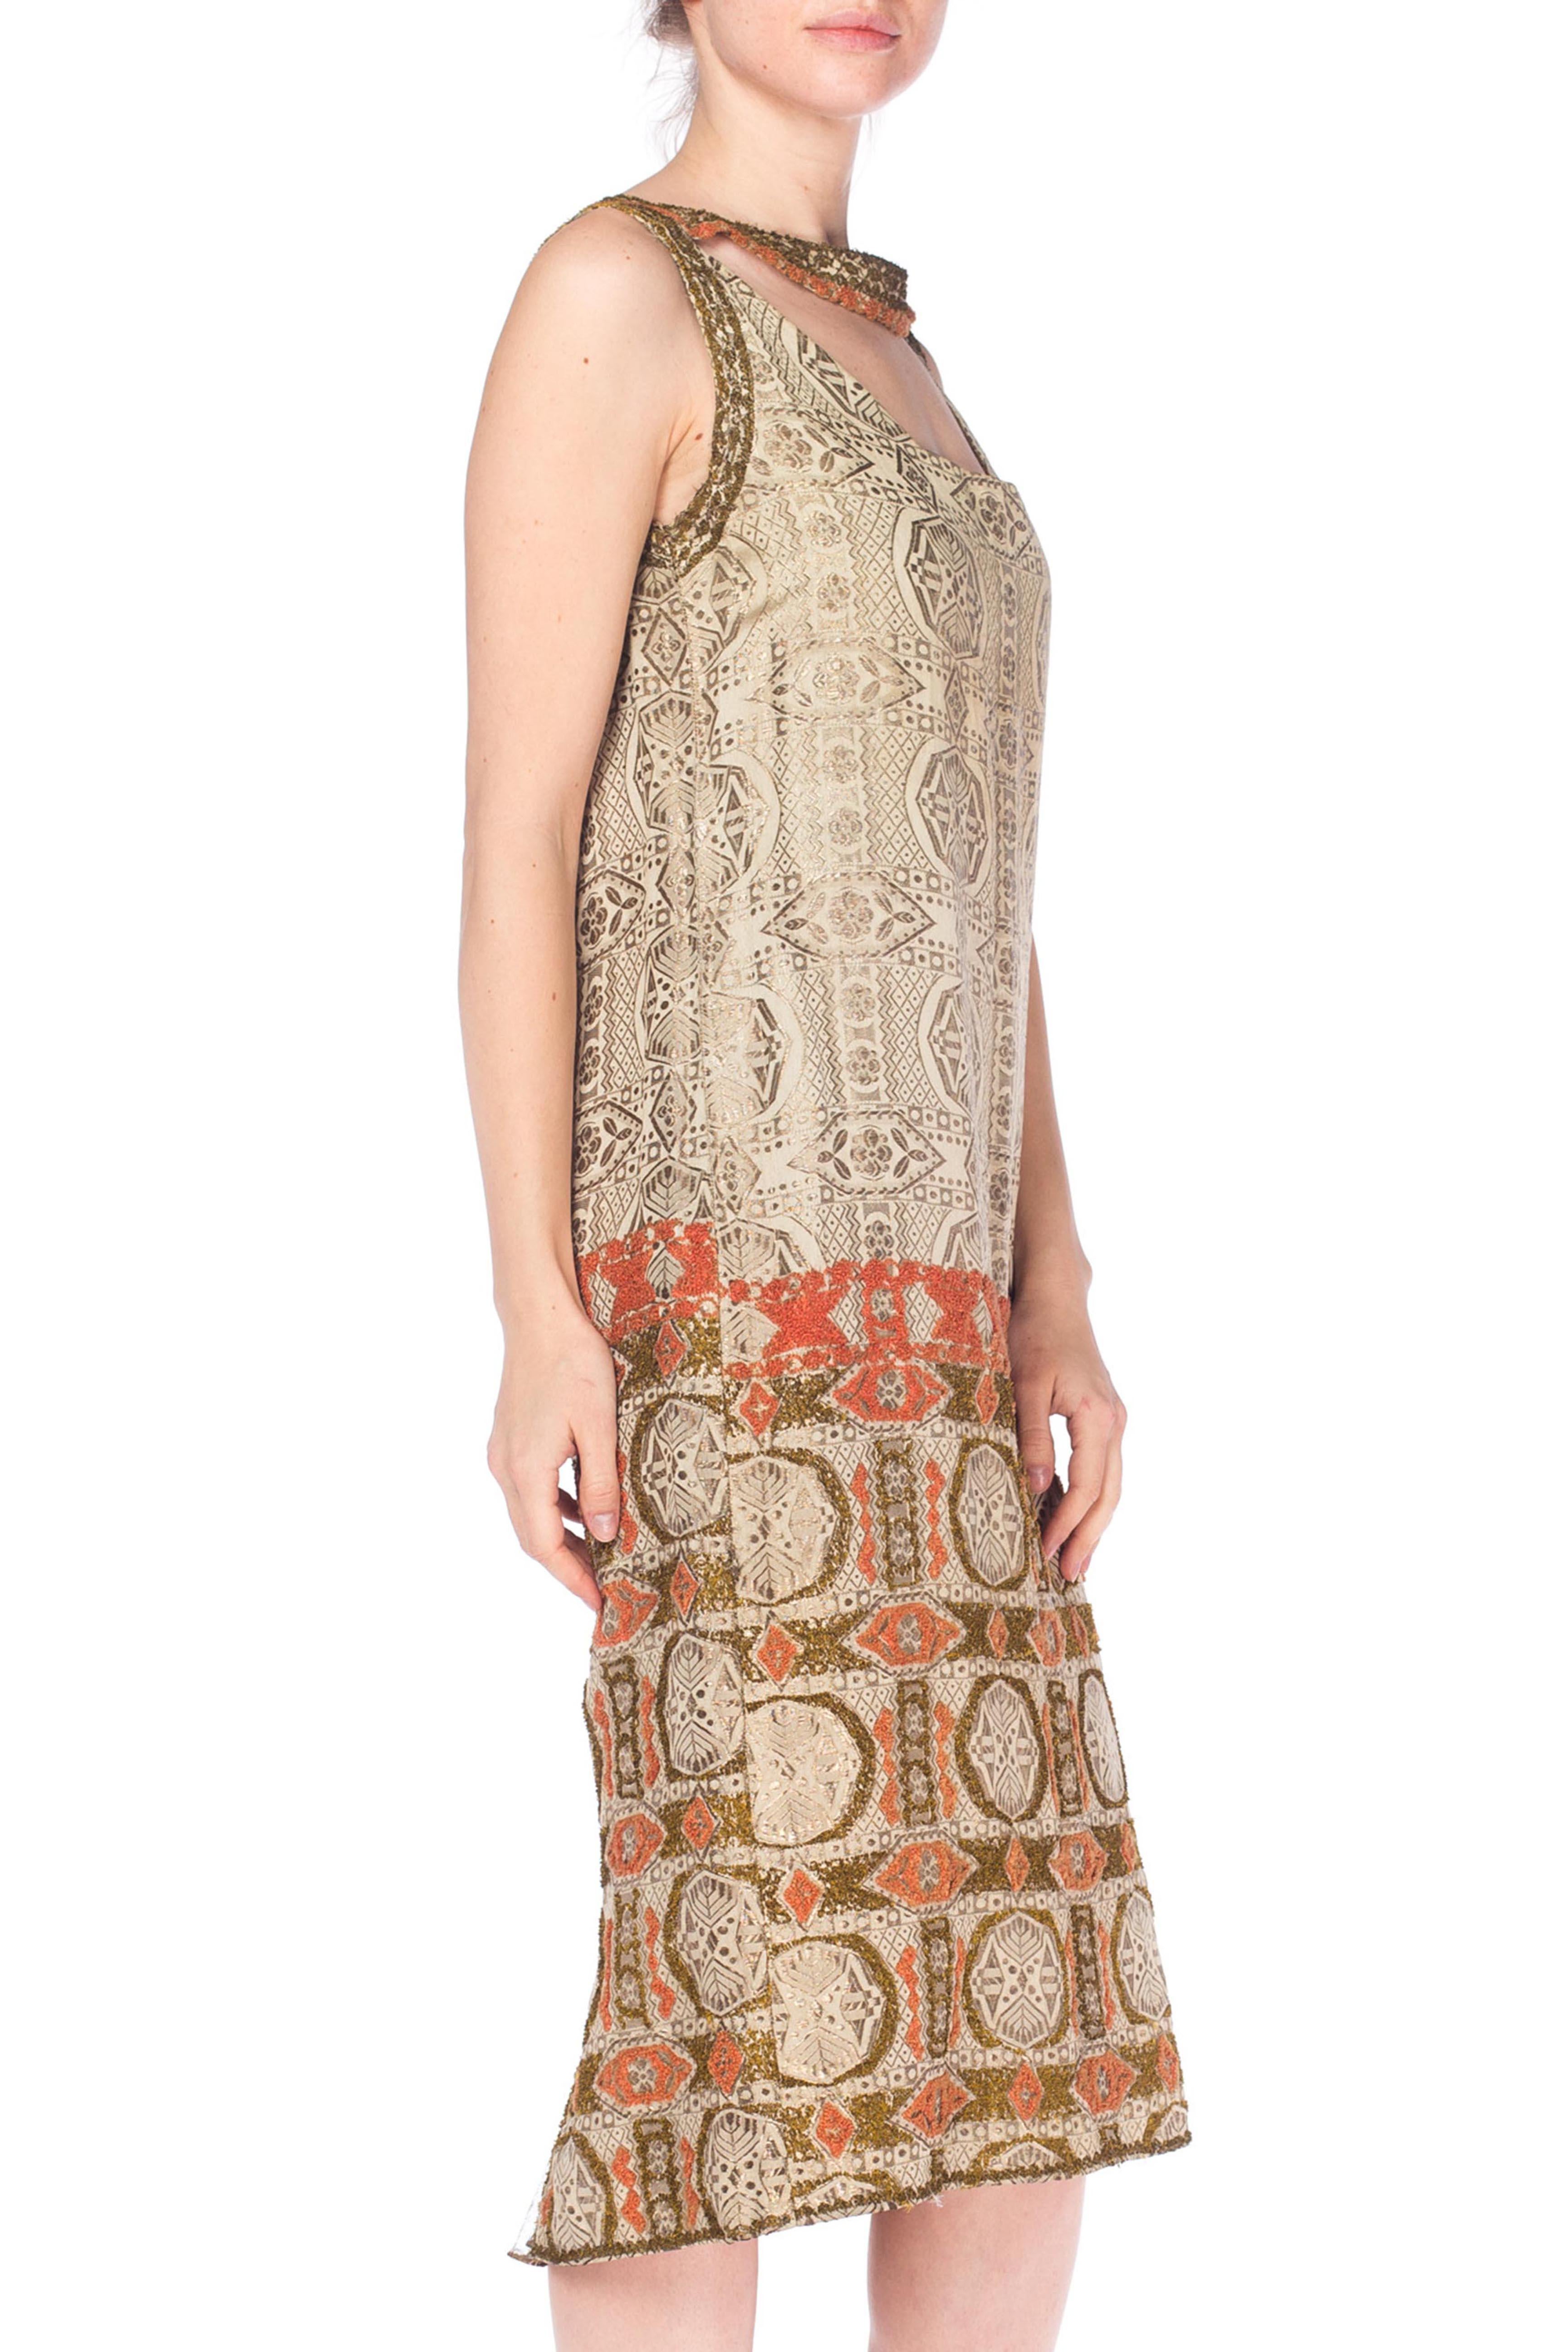 1920S Champagner Lamé Geometrischer Druck  Kleid mit korallenrotem und goldenem French Knot Deko-Muster